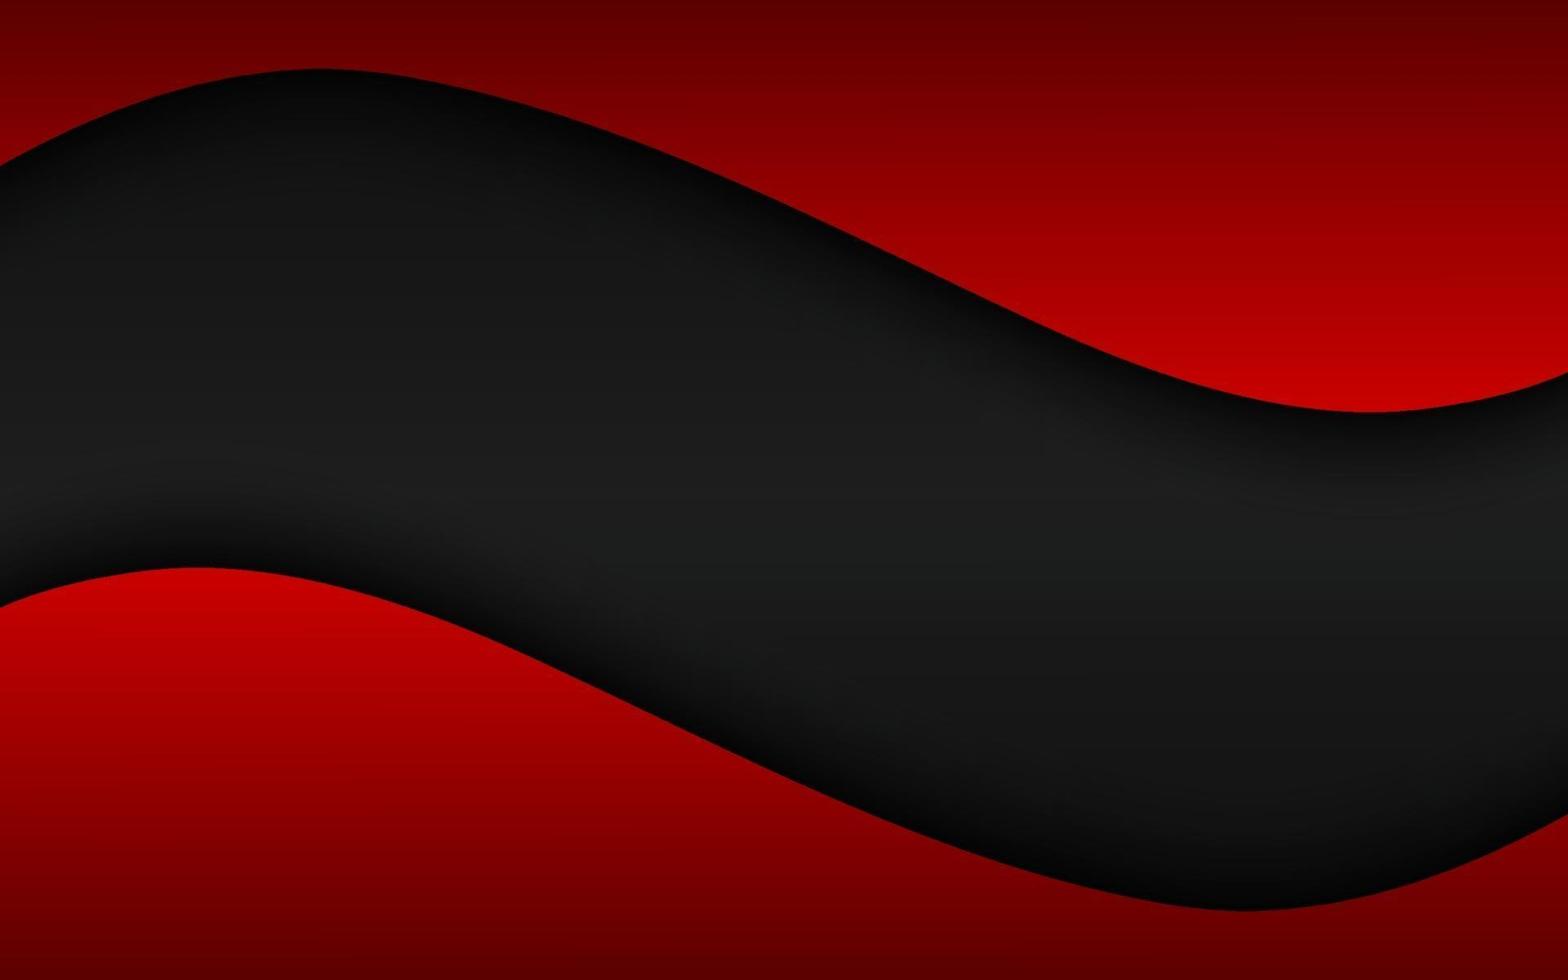 Fondo de vector de onda abstracto negro y rojo con espacio en blanco para el texto. Ilustración de vector de diseño corporativo moderno